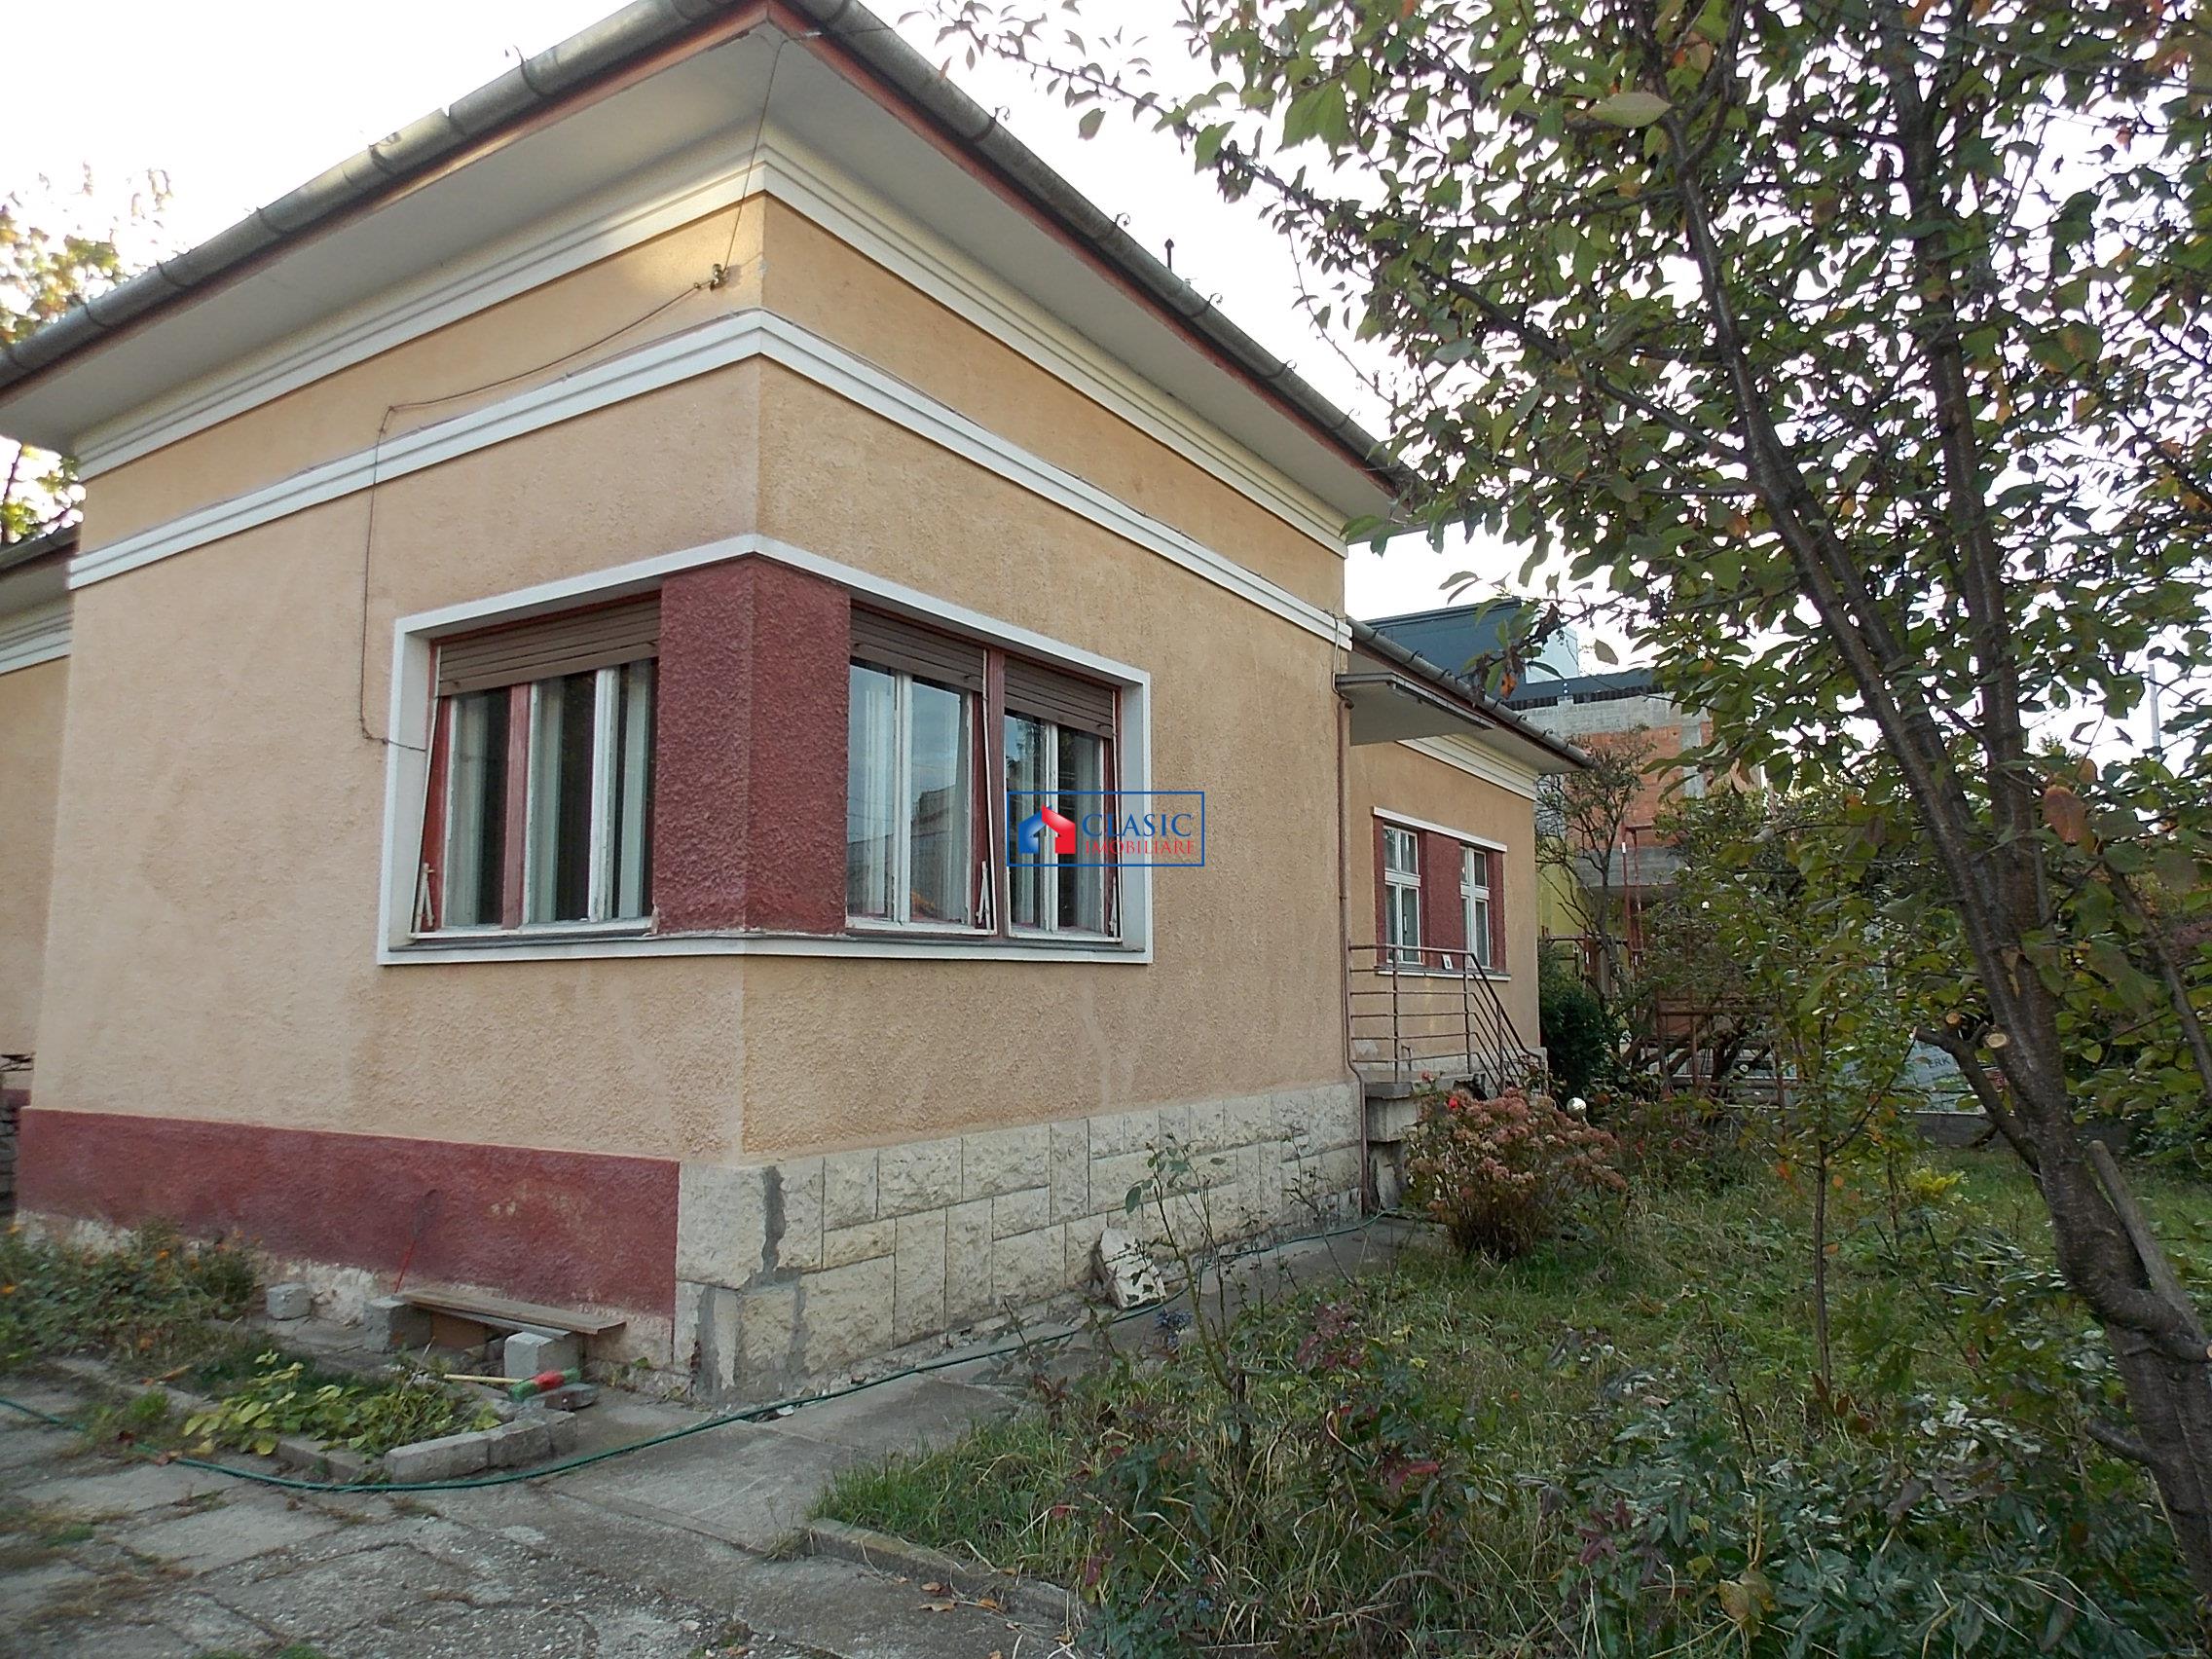 Inchiriere casa individuala 1000 mp teren A.Muresanu, Cluj-Napoca